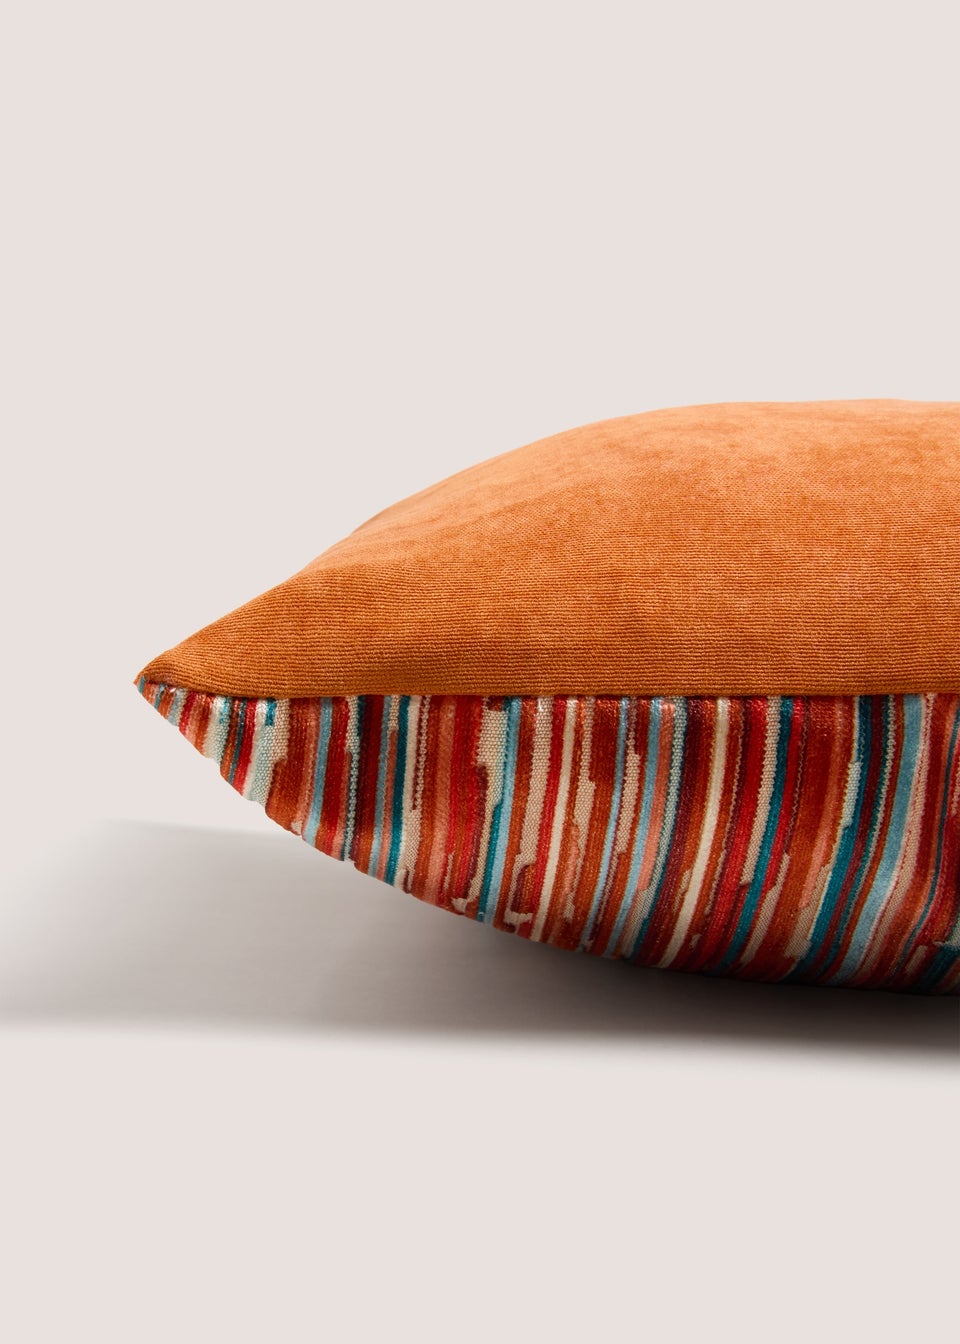 Velvet Stripe Cushion Rust (43cm x 43cm)